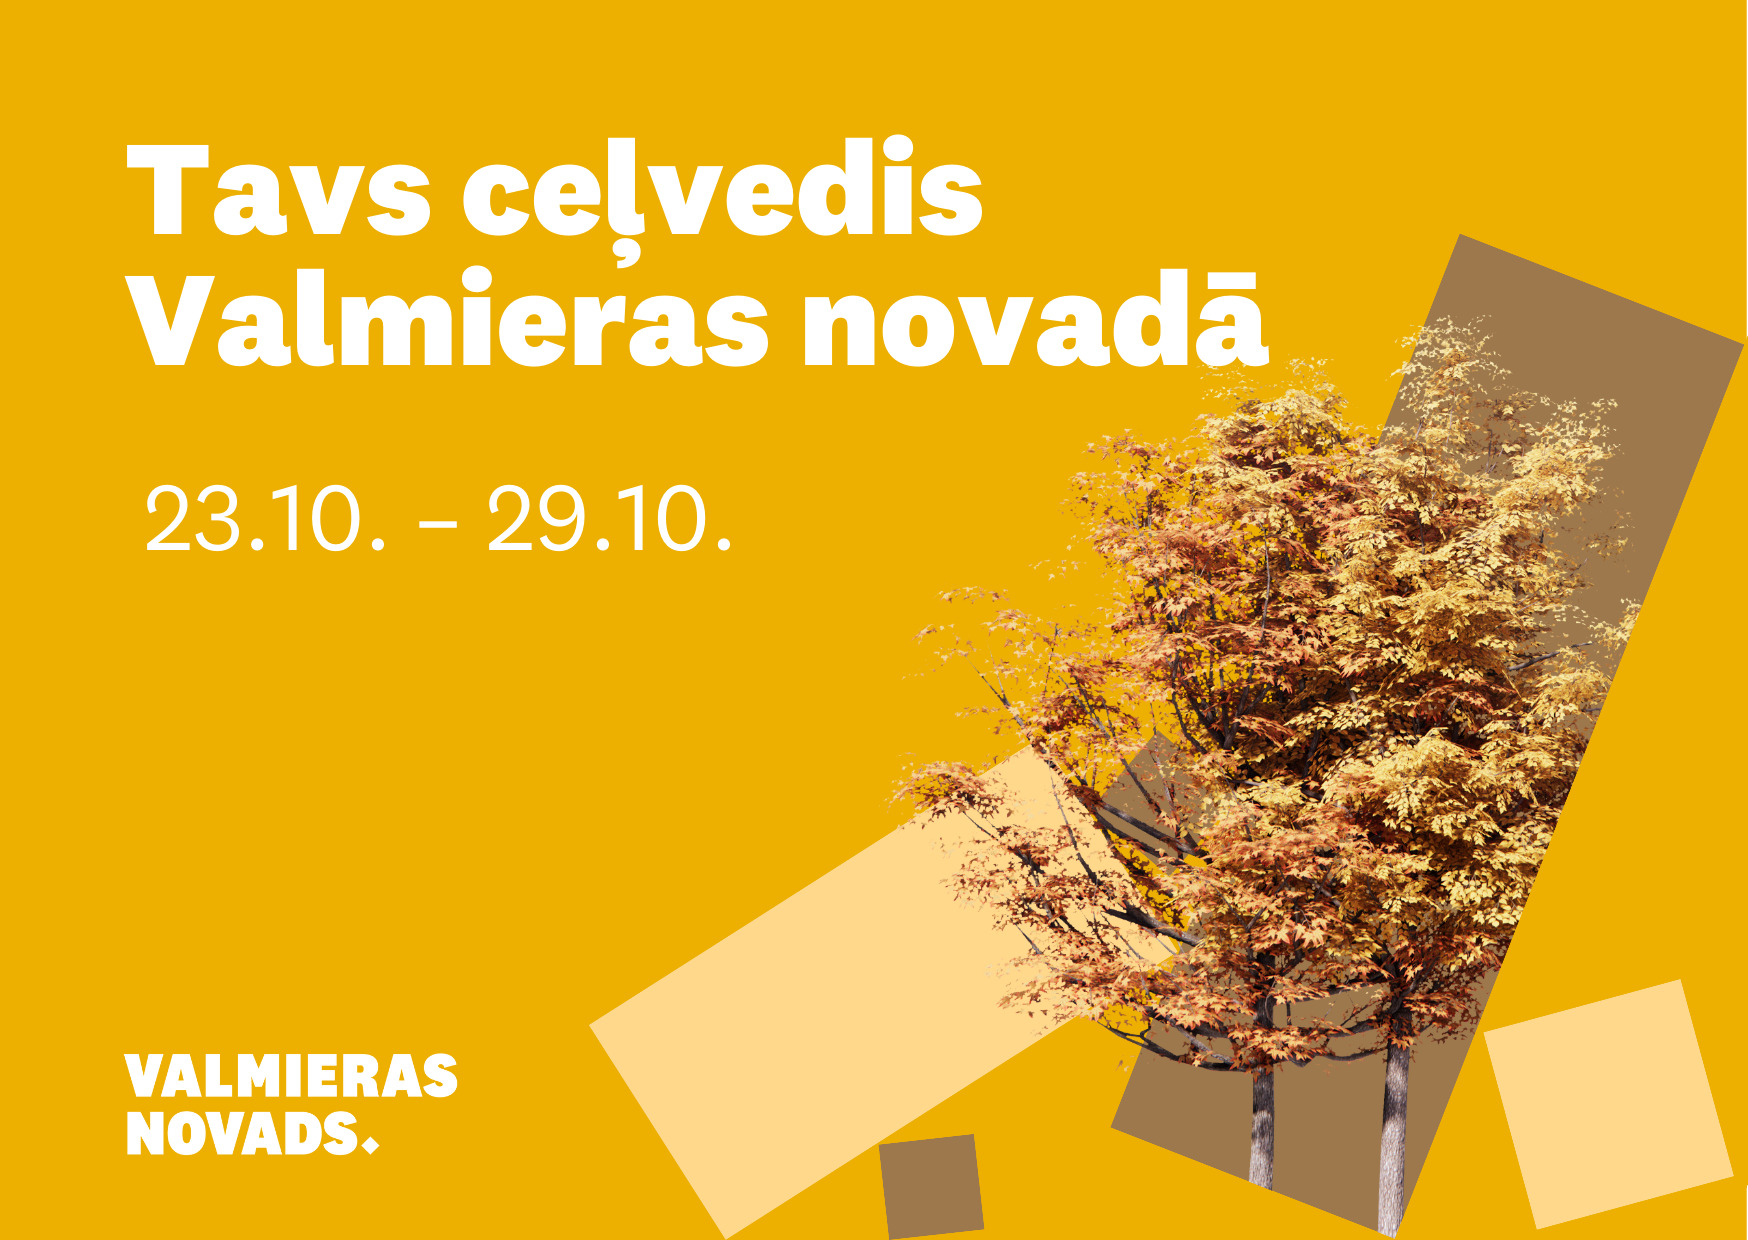 Ar Valmieras novada aktualitātēm no 23. oktobra līdz 29. oktobrim vari iepazīties ŠEIT.